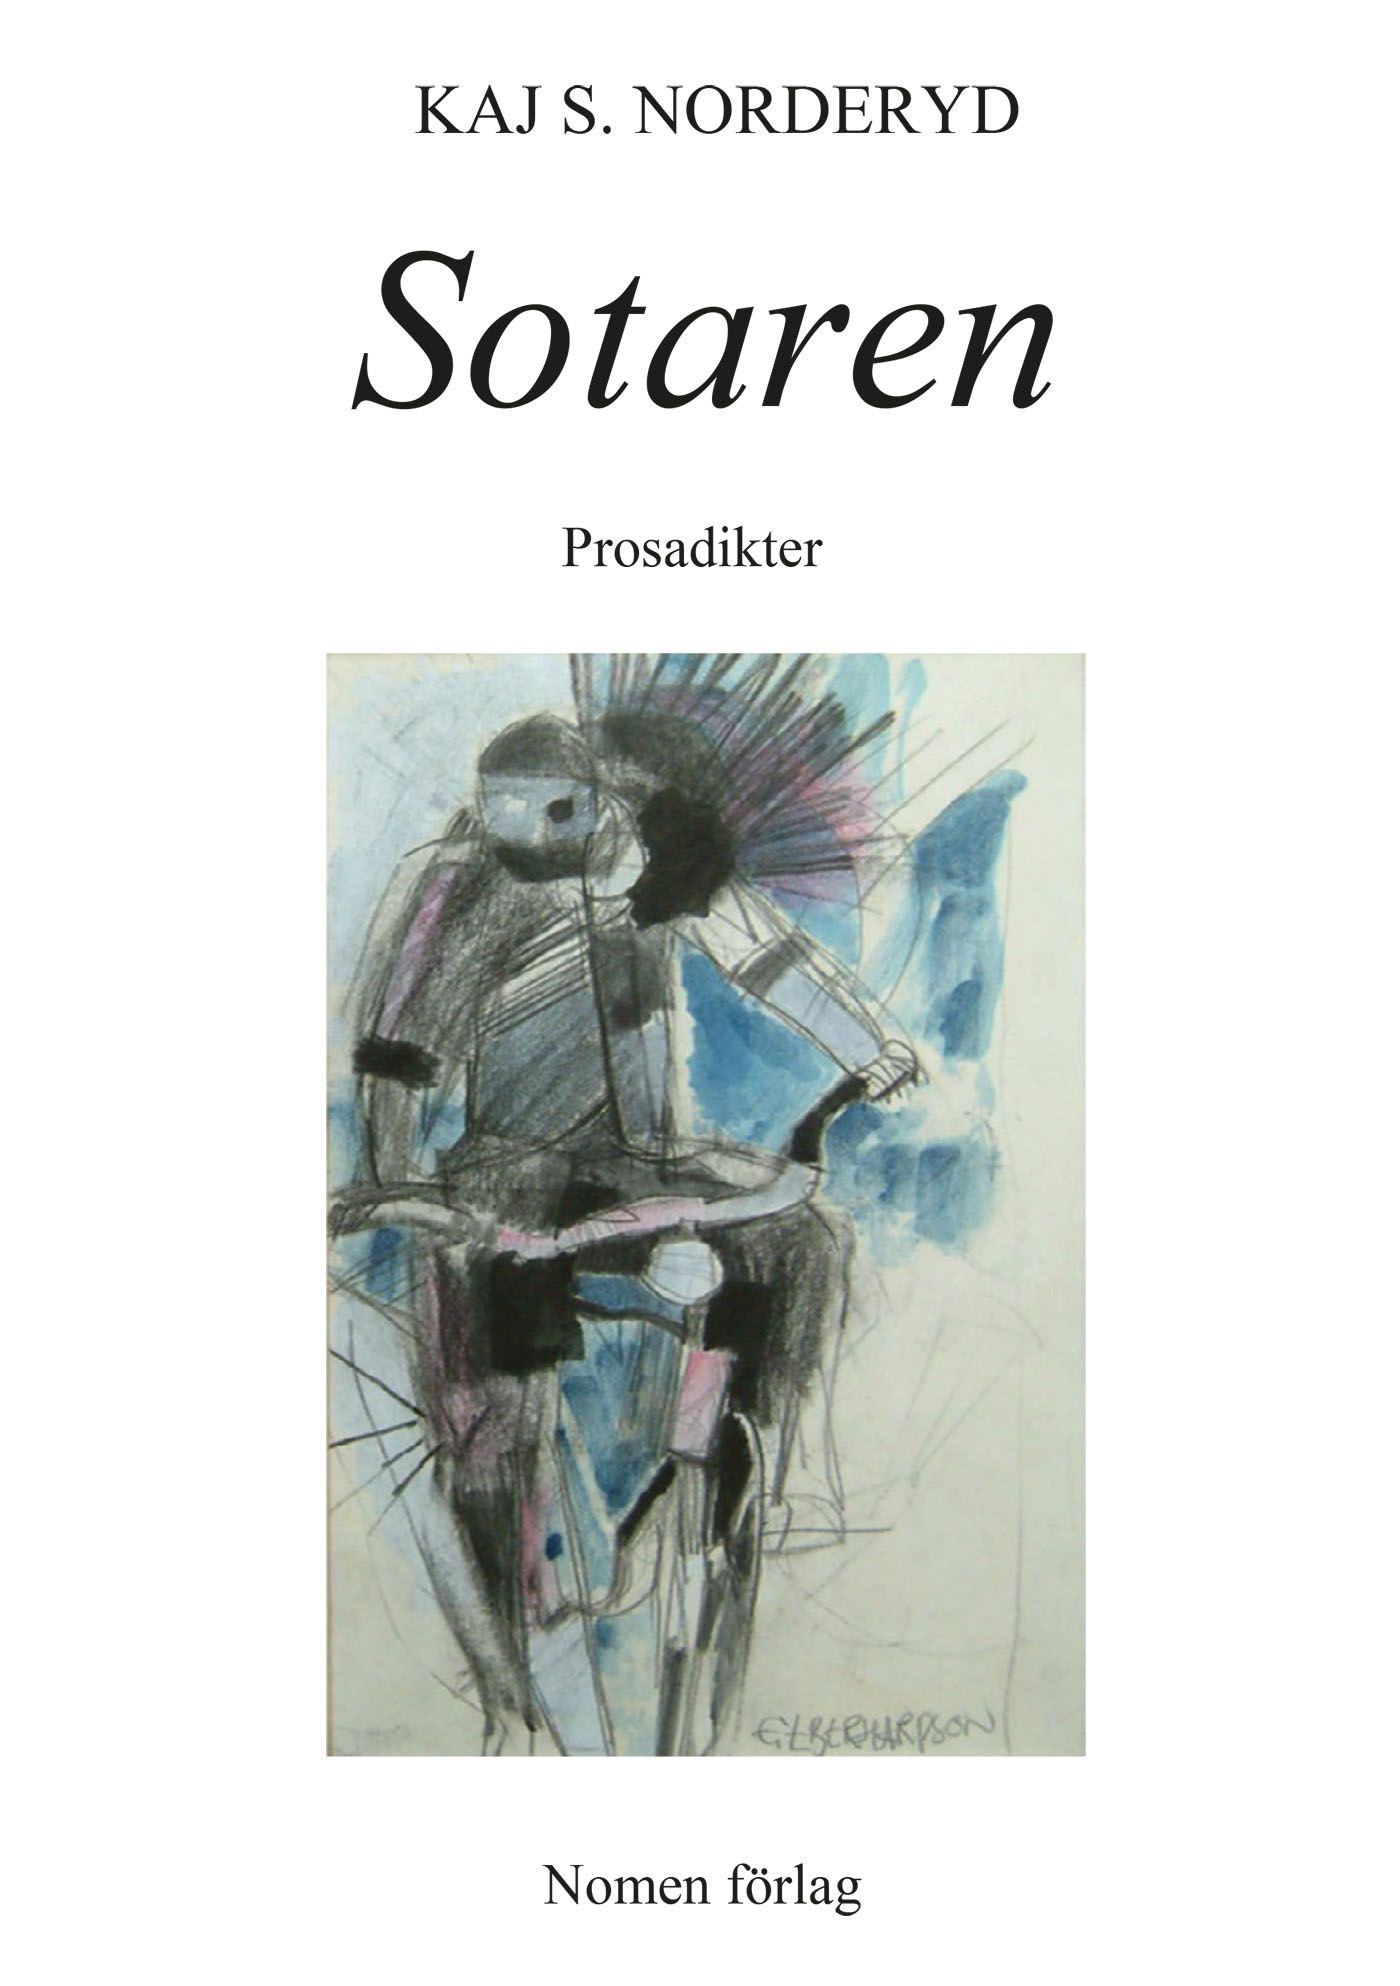 Sotaren - Prosadikter, e-bok av Kaj S. Norderyd